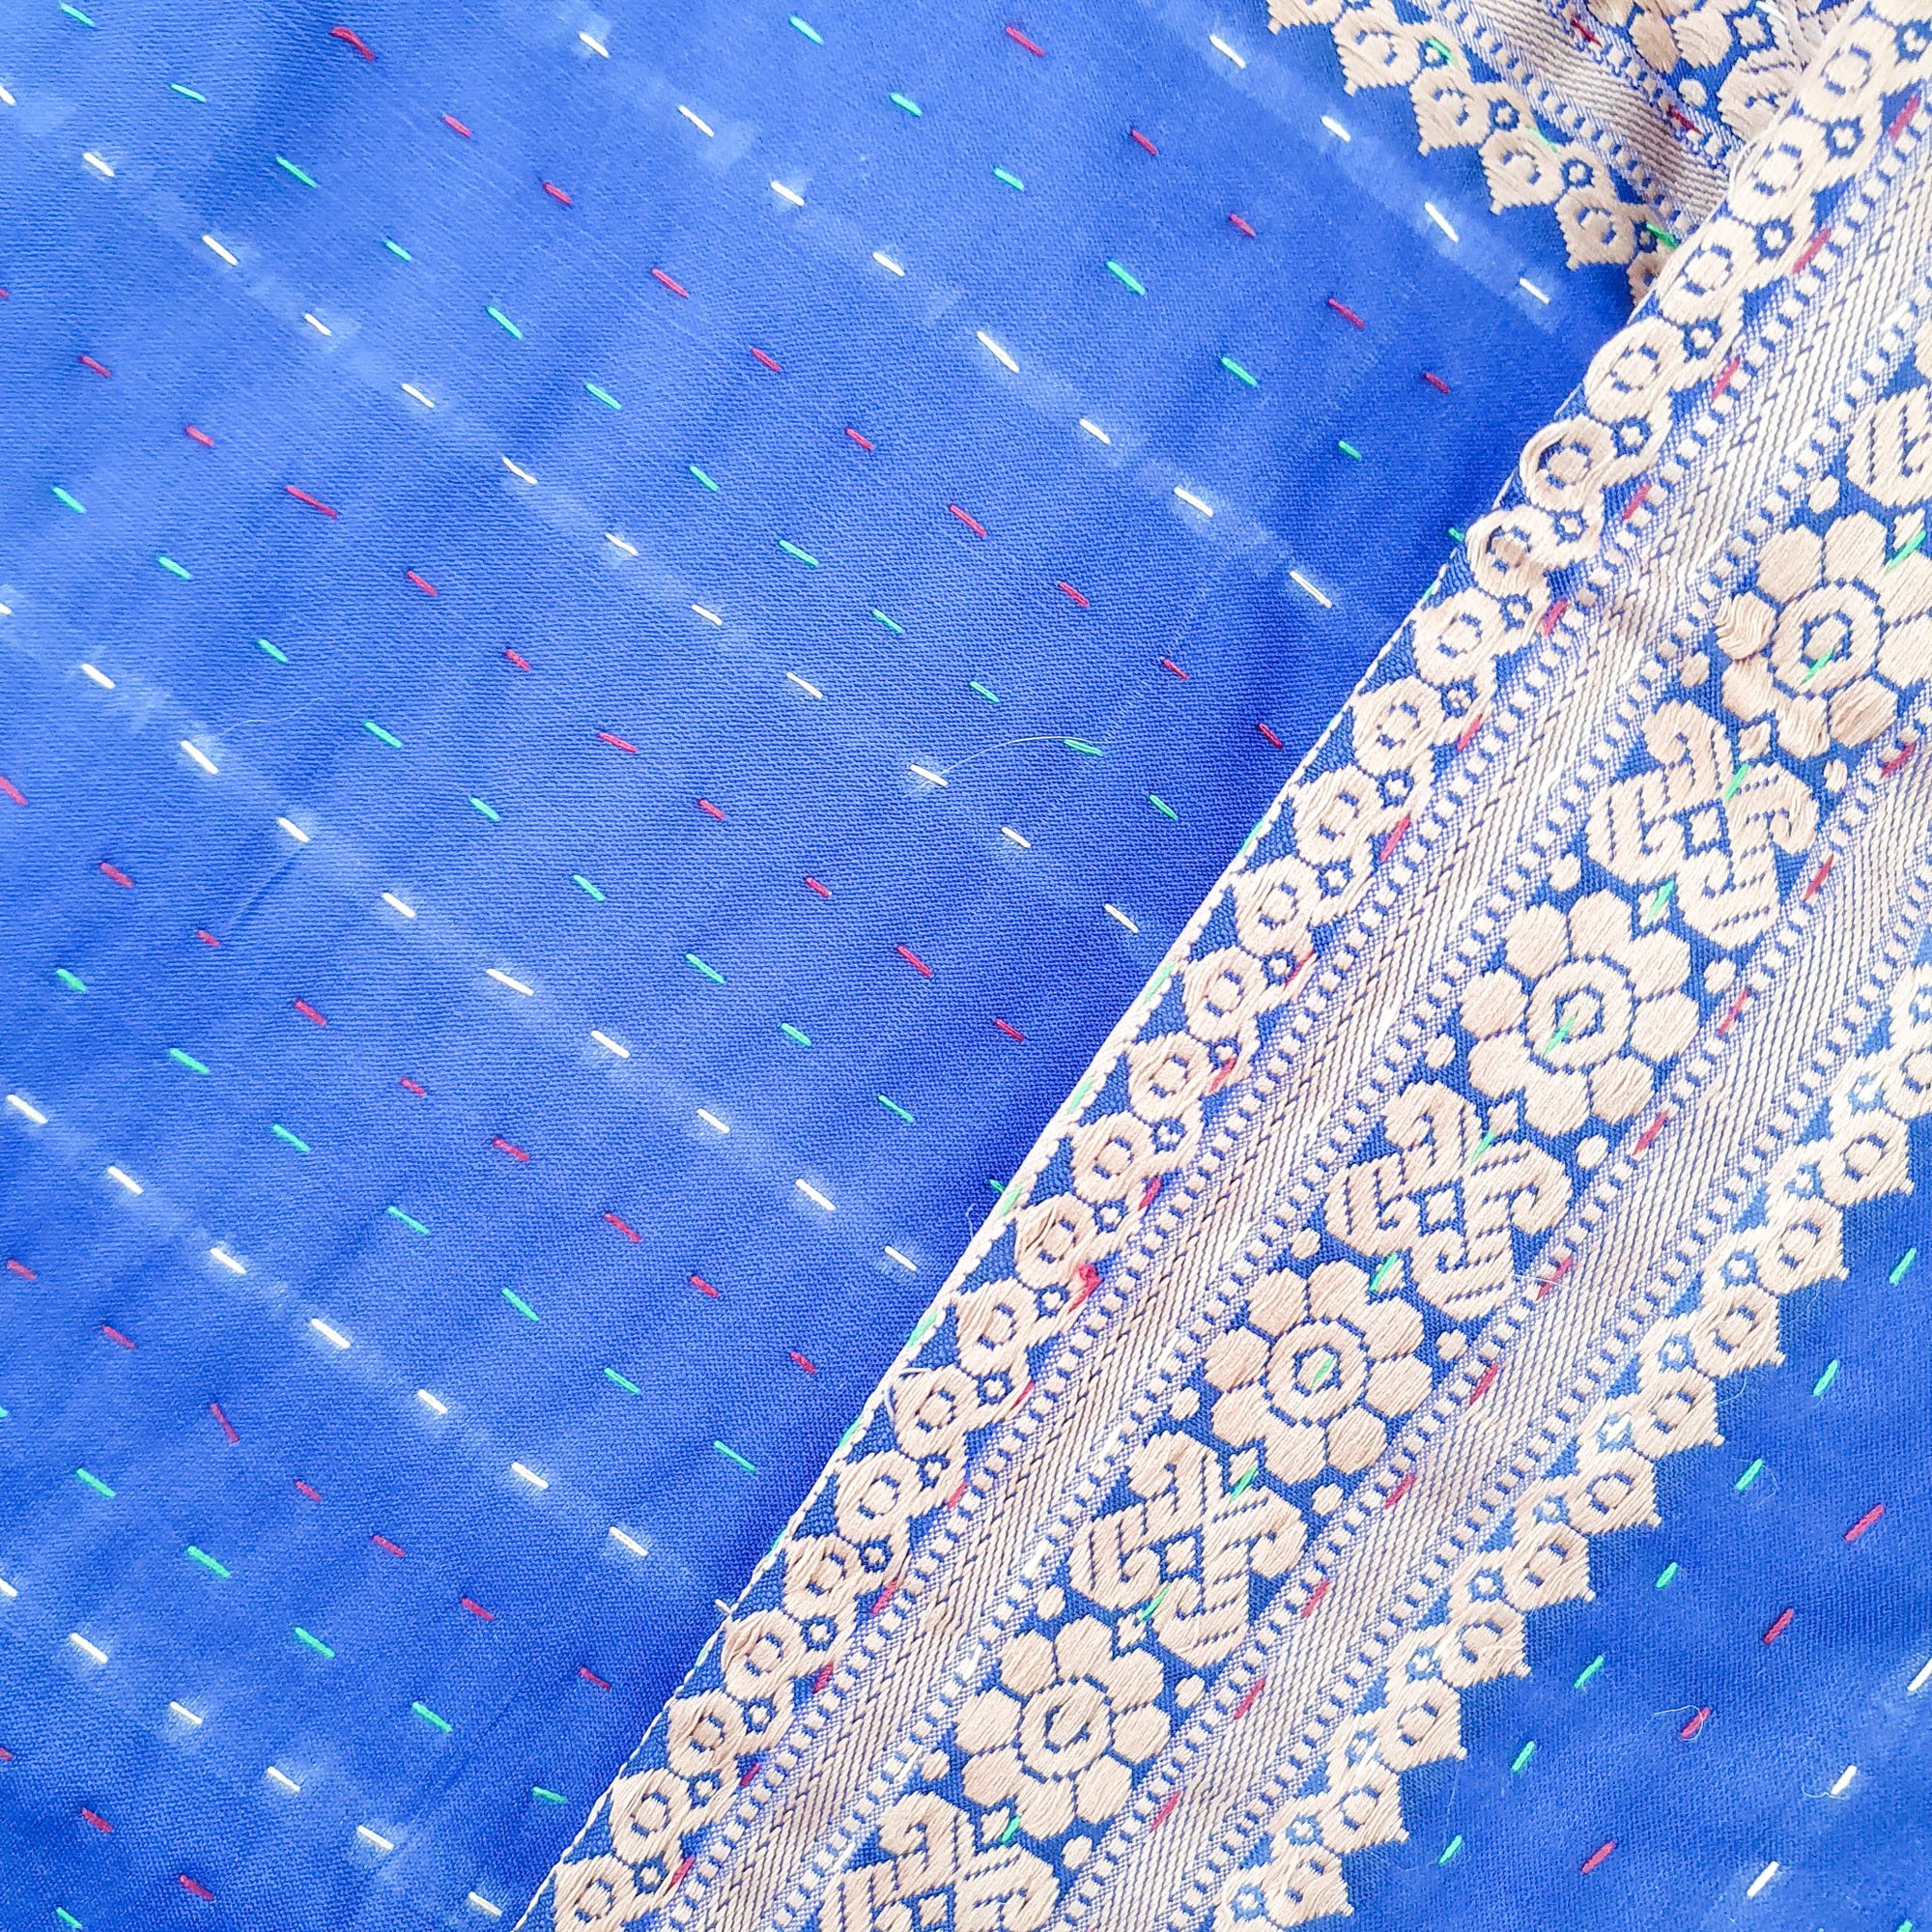 Silk Sari Cushion Cover